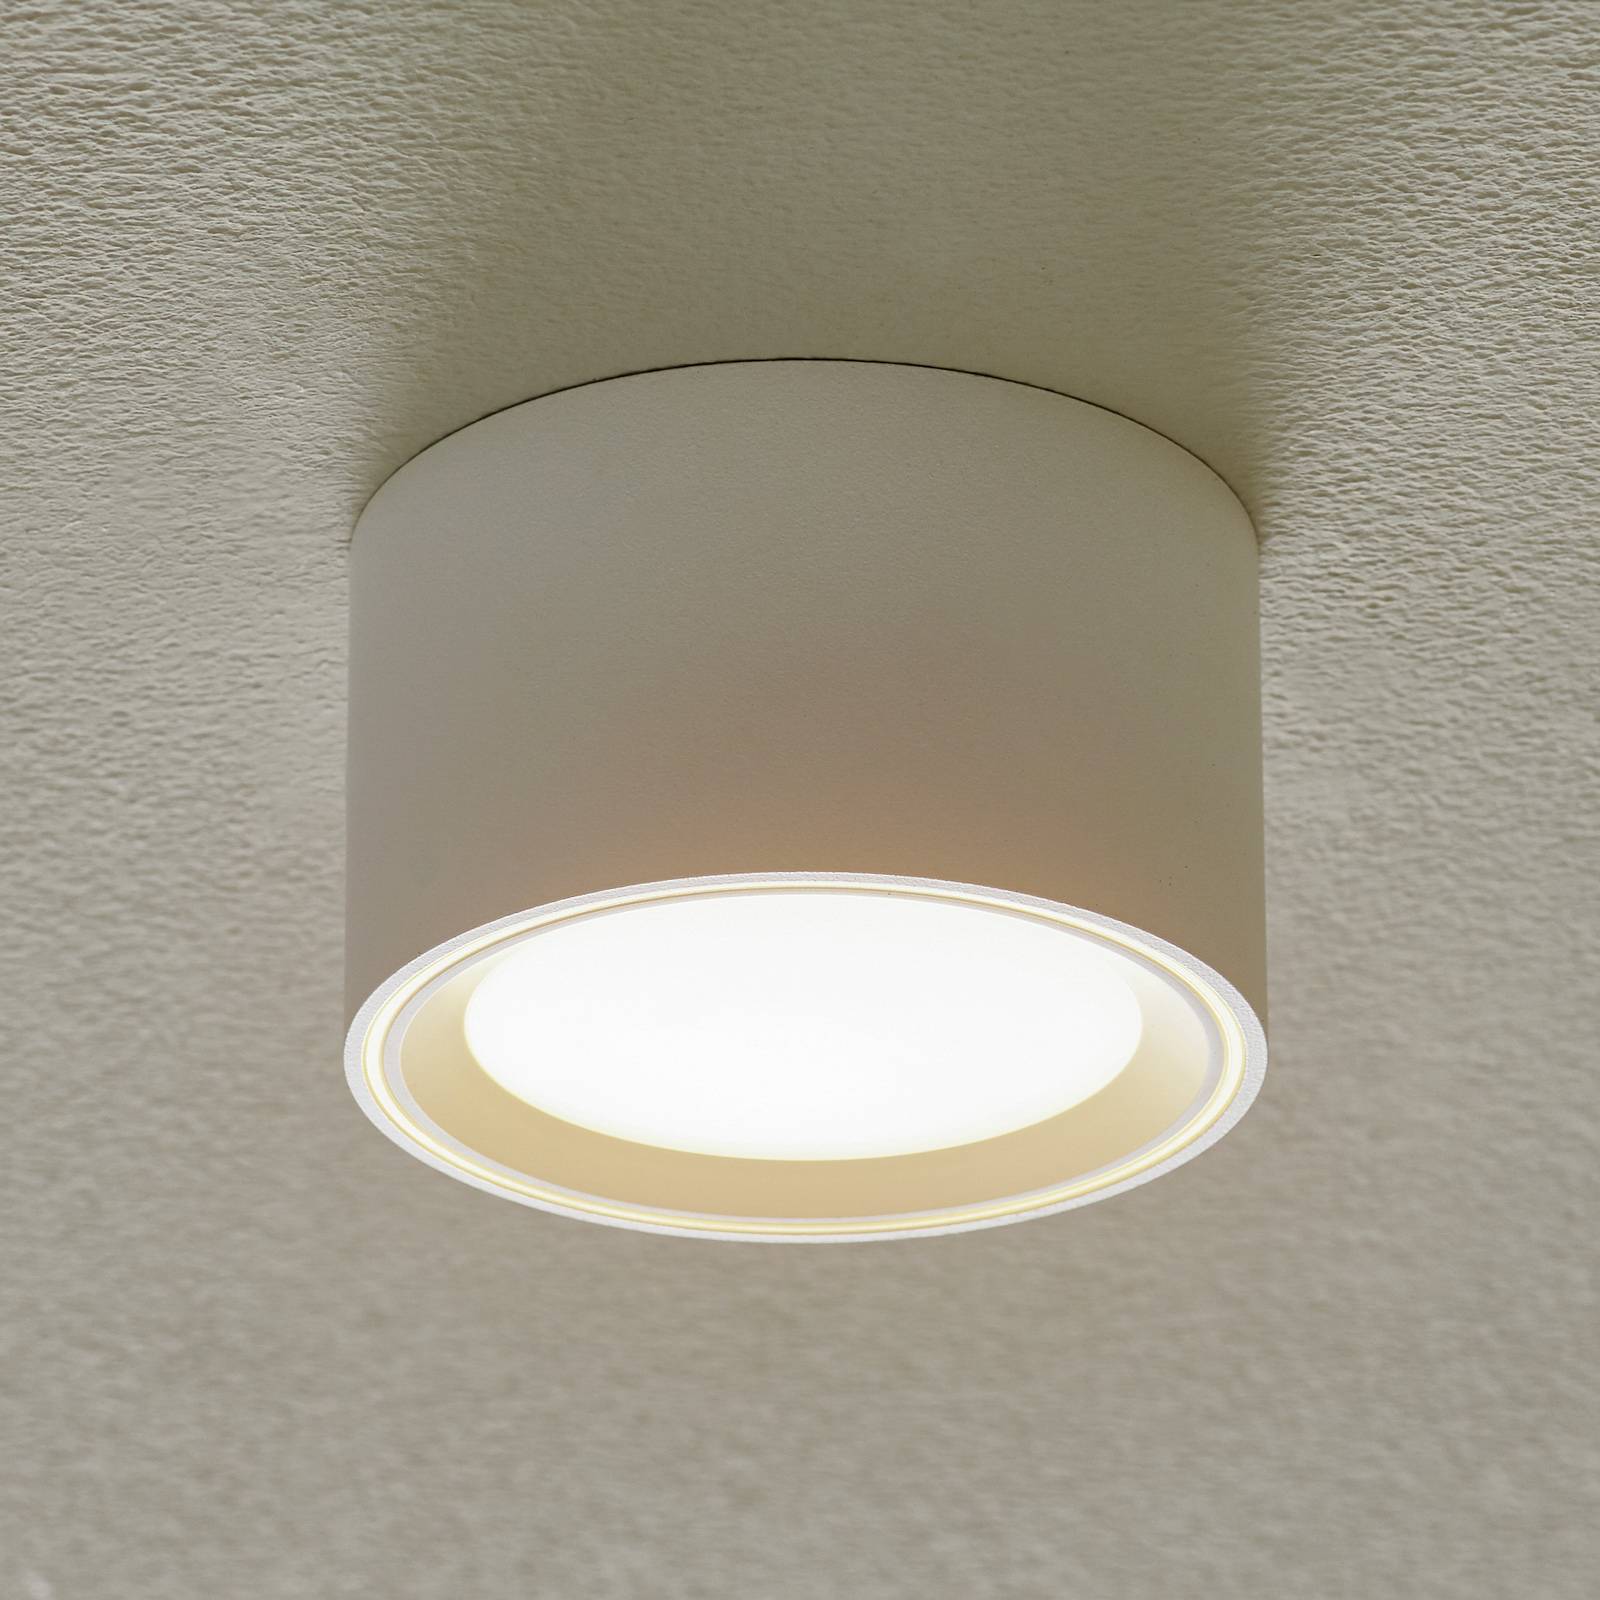 Nordlux LED stropní svítidlo Fallon, výška 6 cm